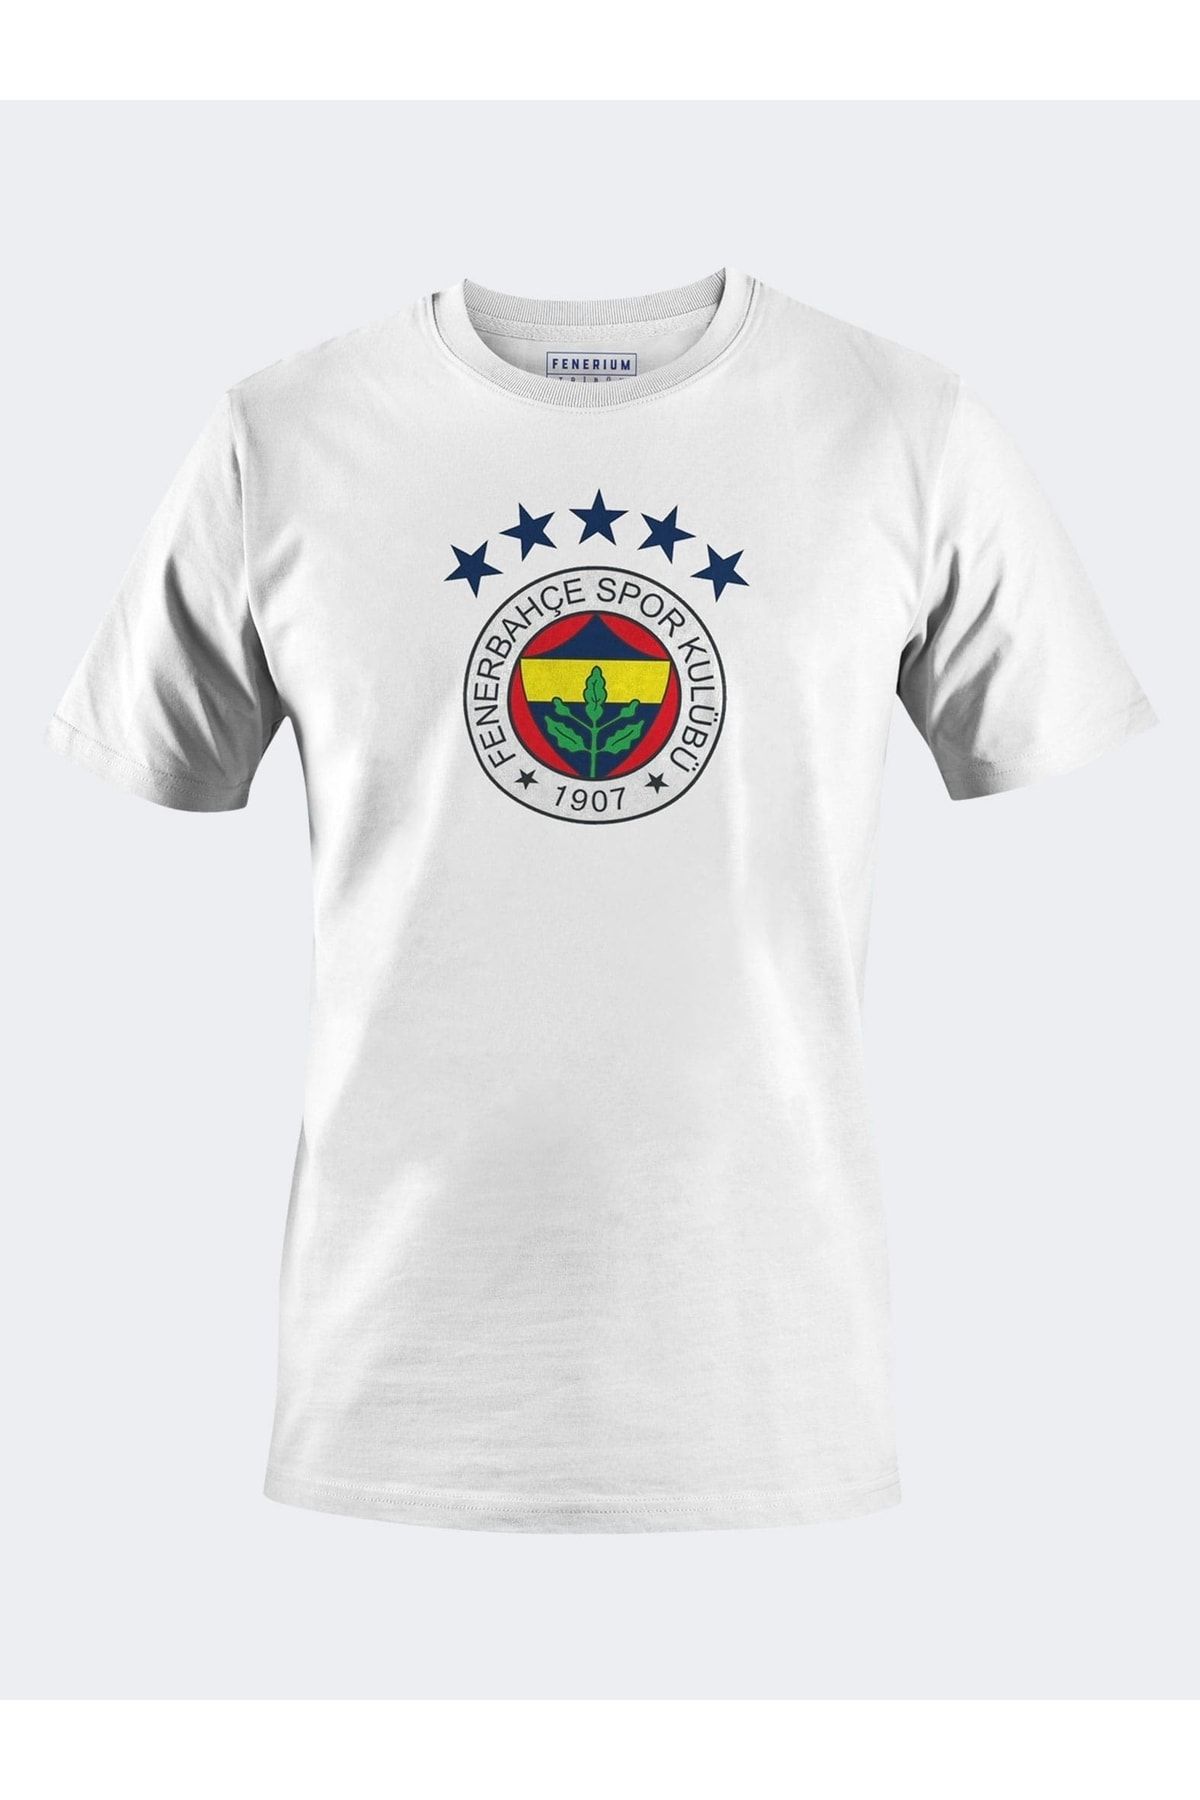 Fenerbahçe 5 Yıldız Tshırt